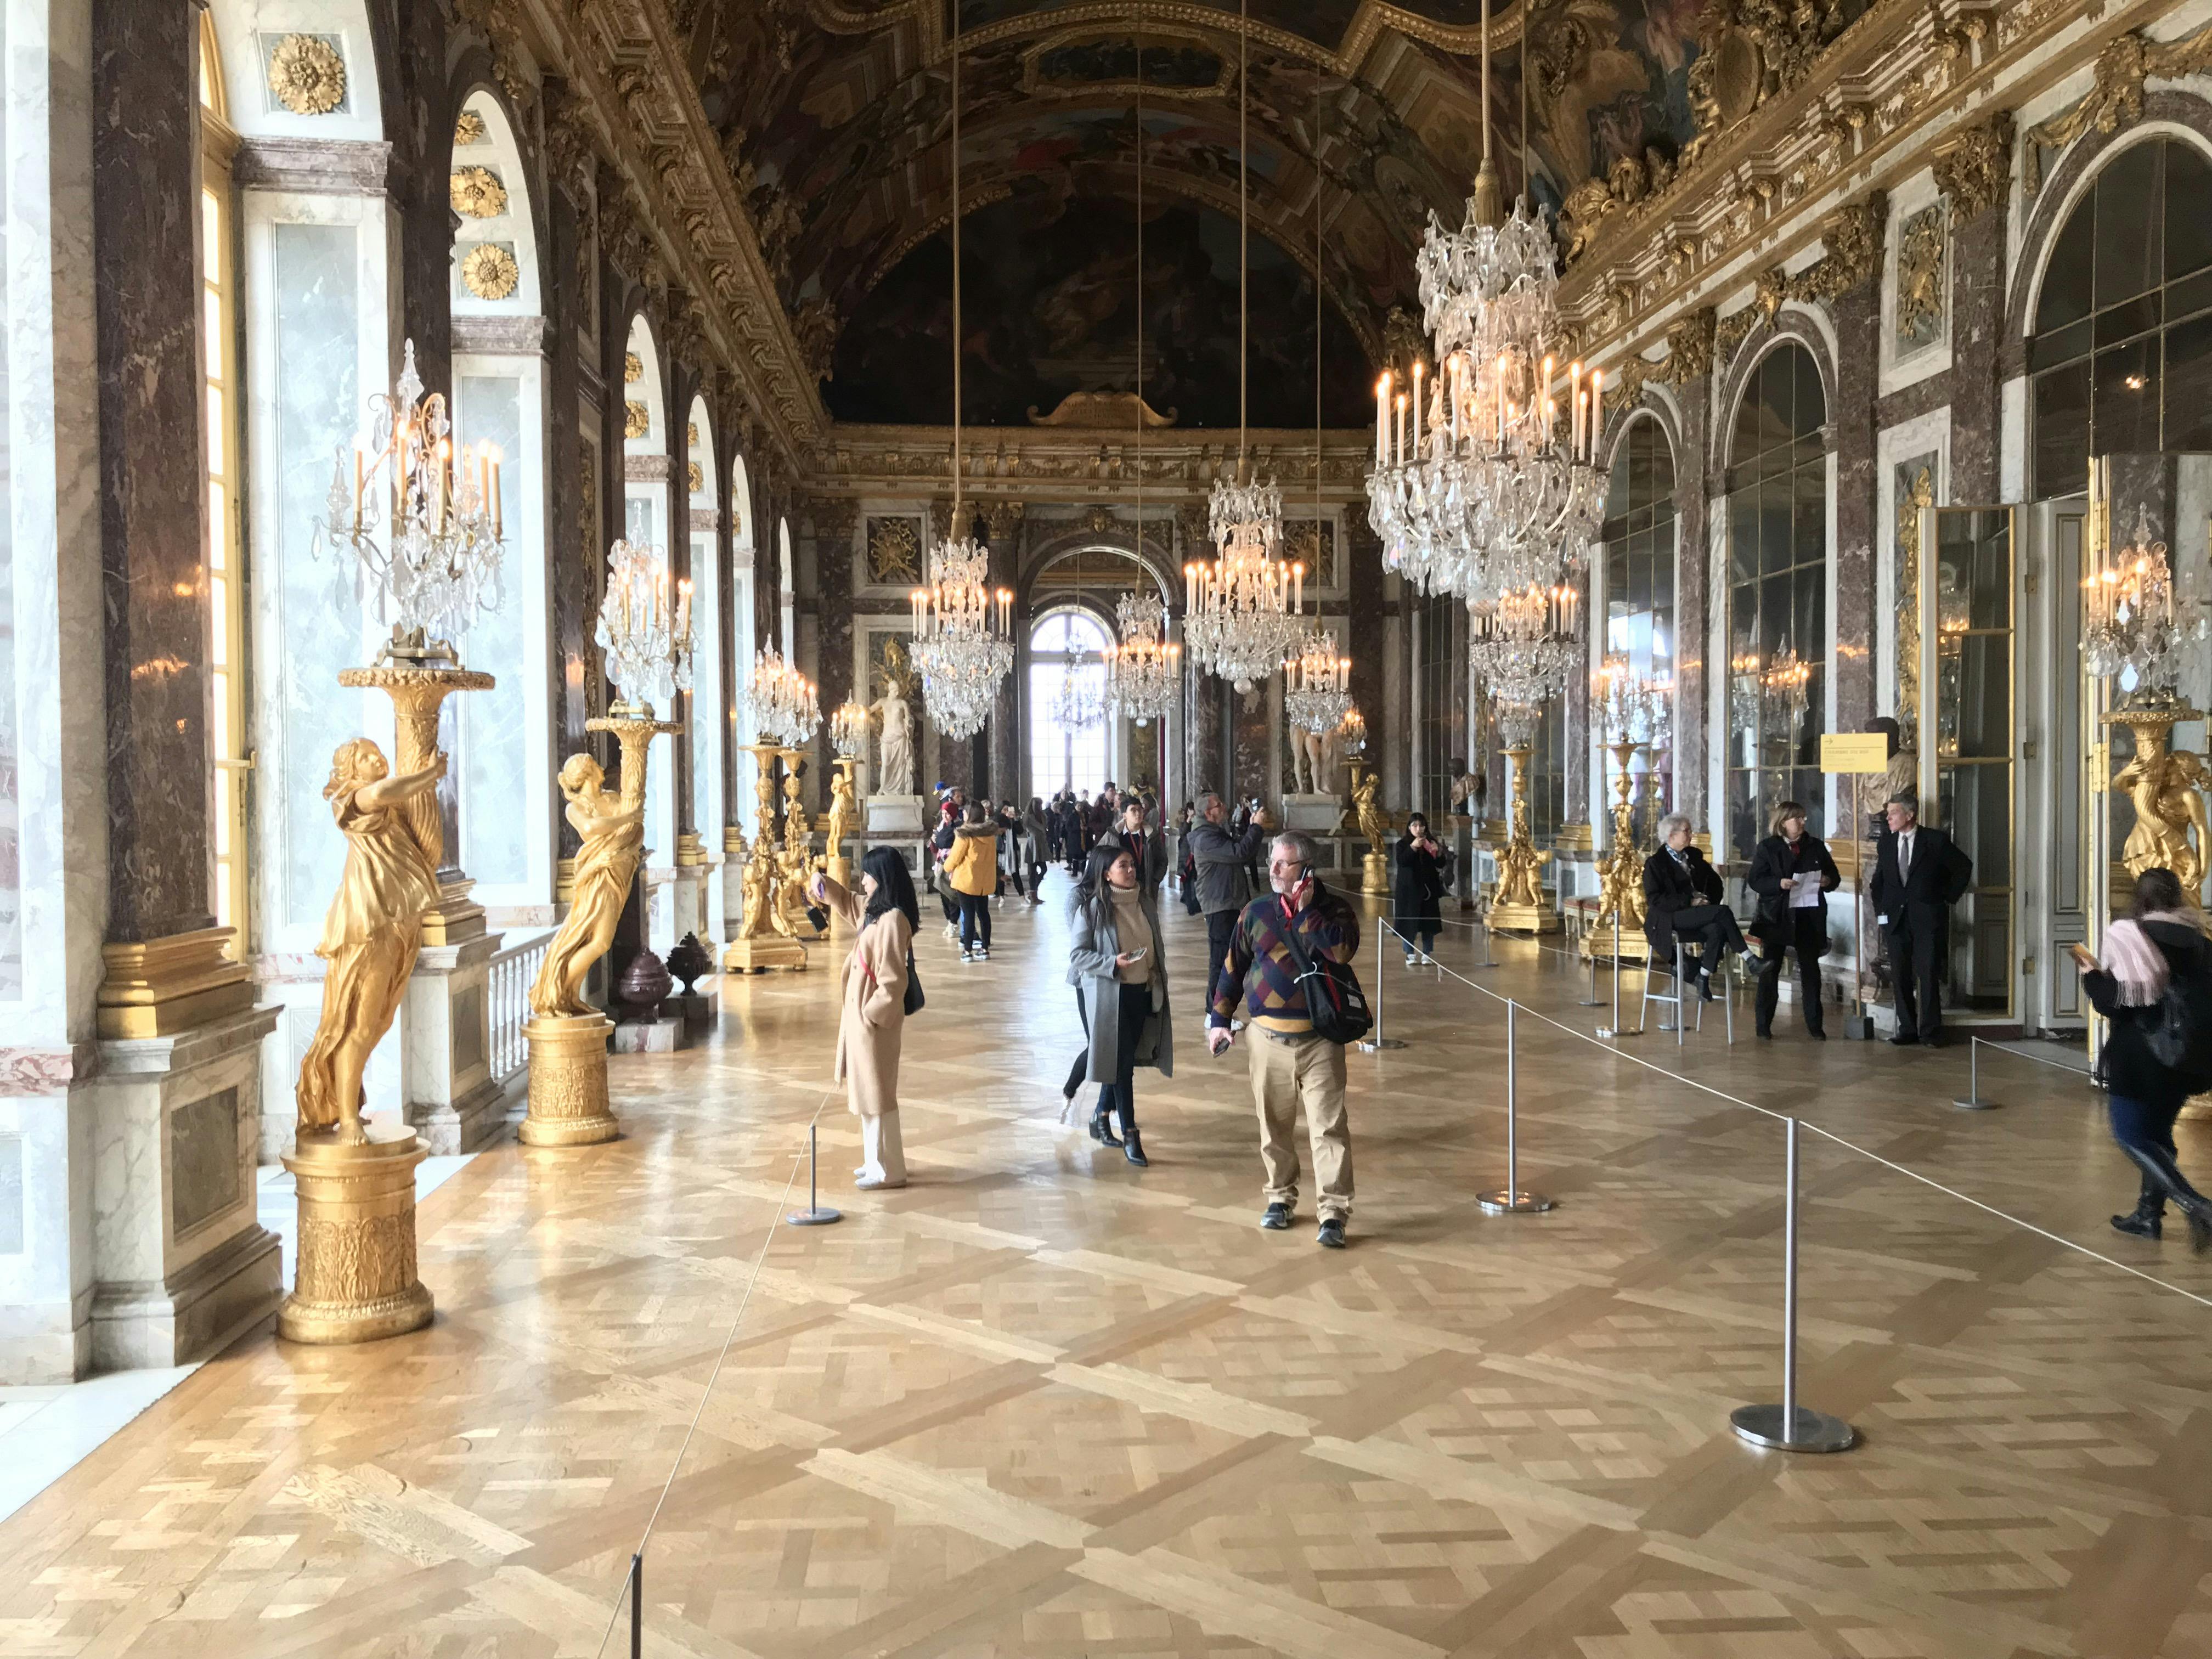 Excursión de medio día a Versalles con transporte, acceso sin colas y audioguía